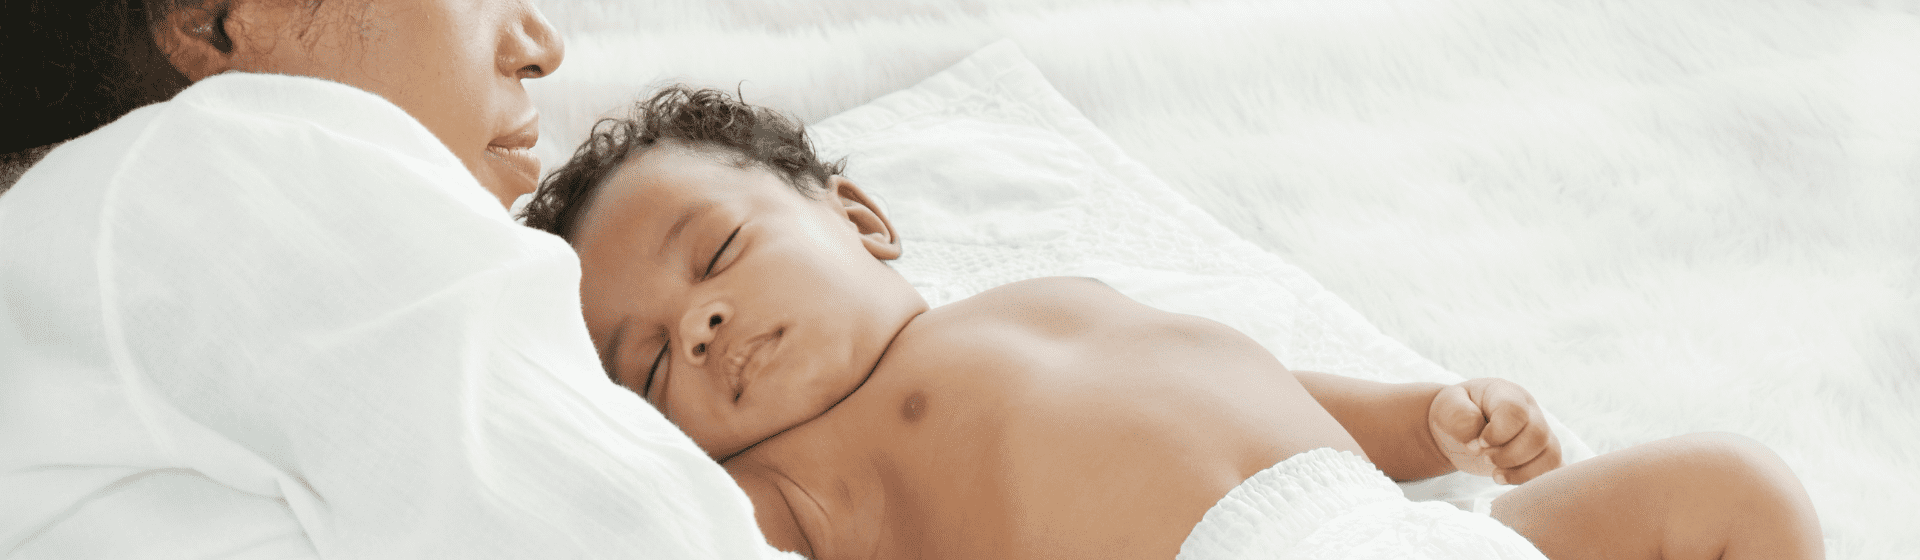 Fralda descartável: qual é a melhor para o bebê dormir?